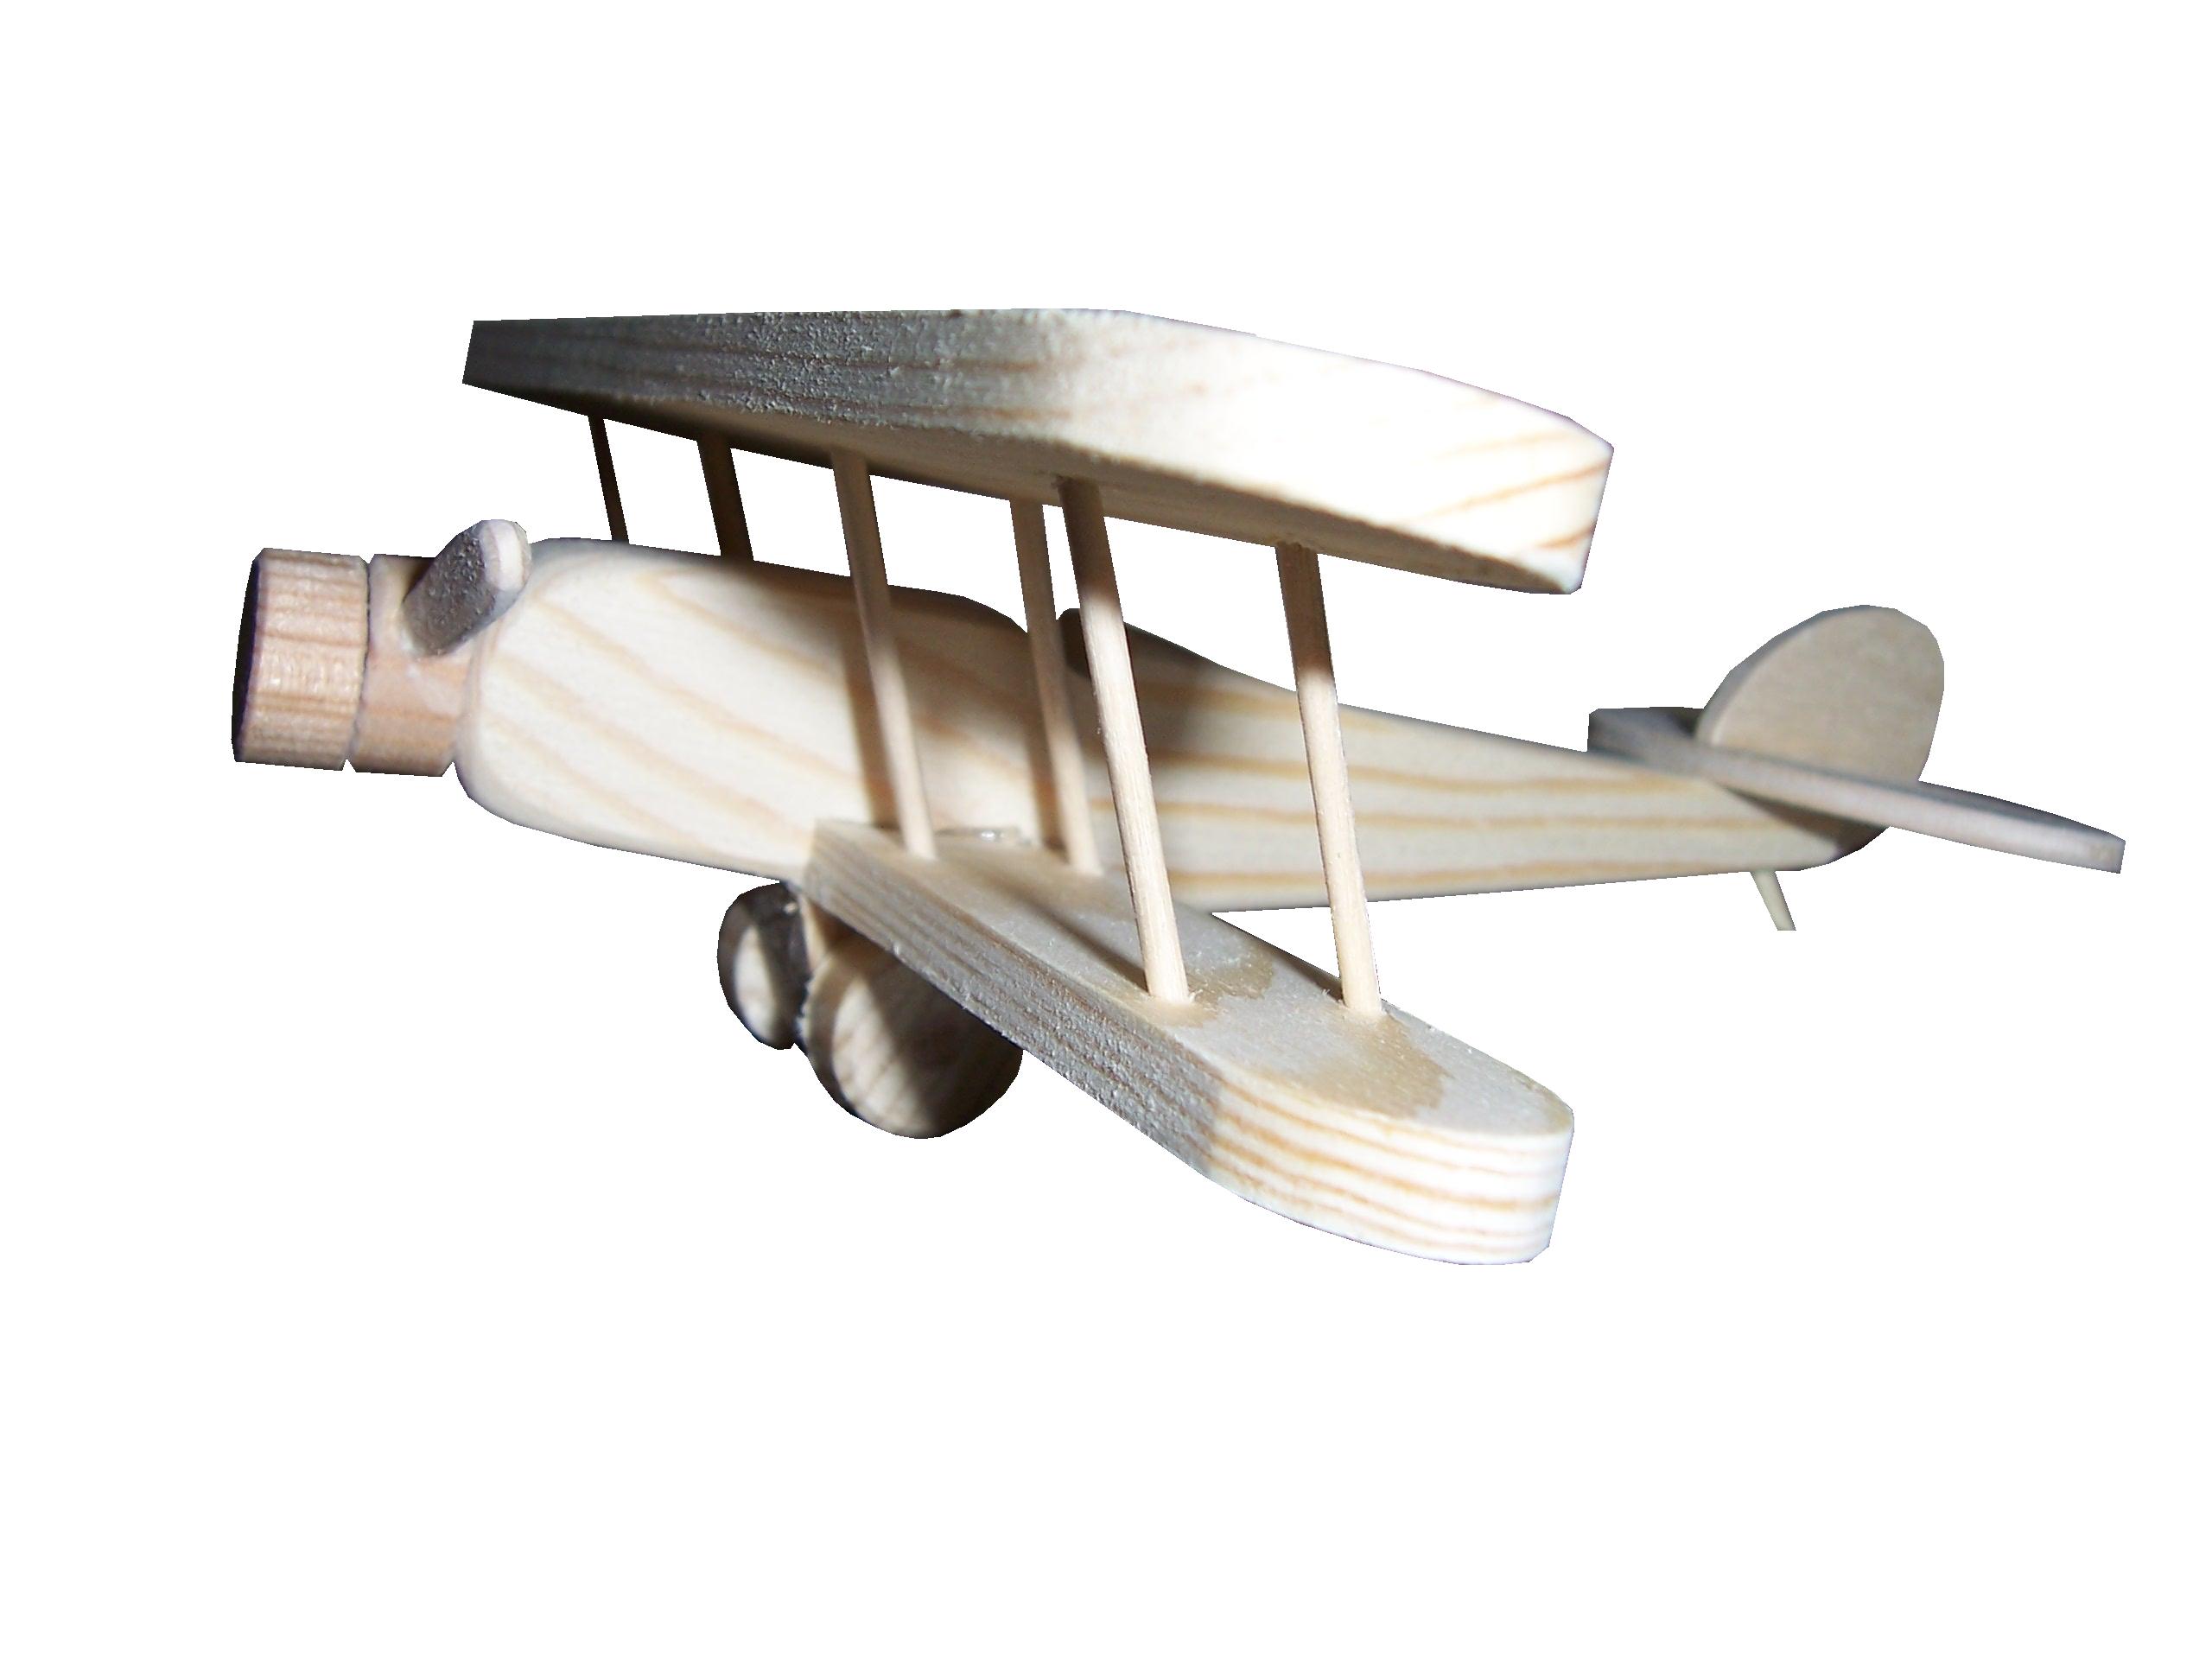 lietadlo Nieuport